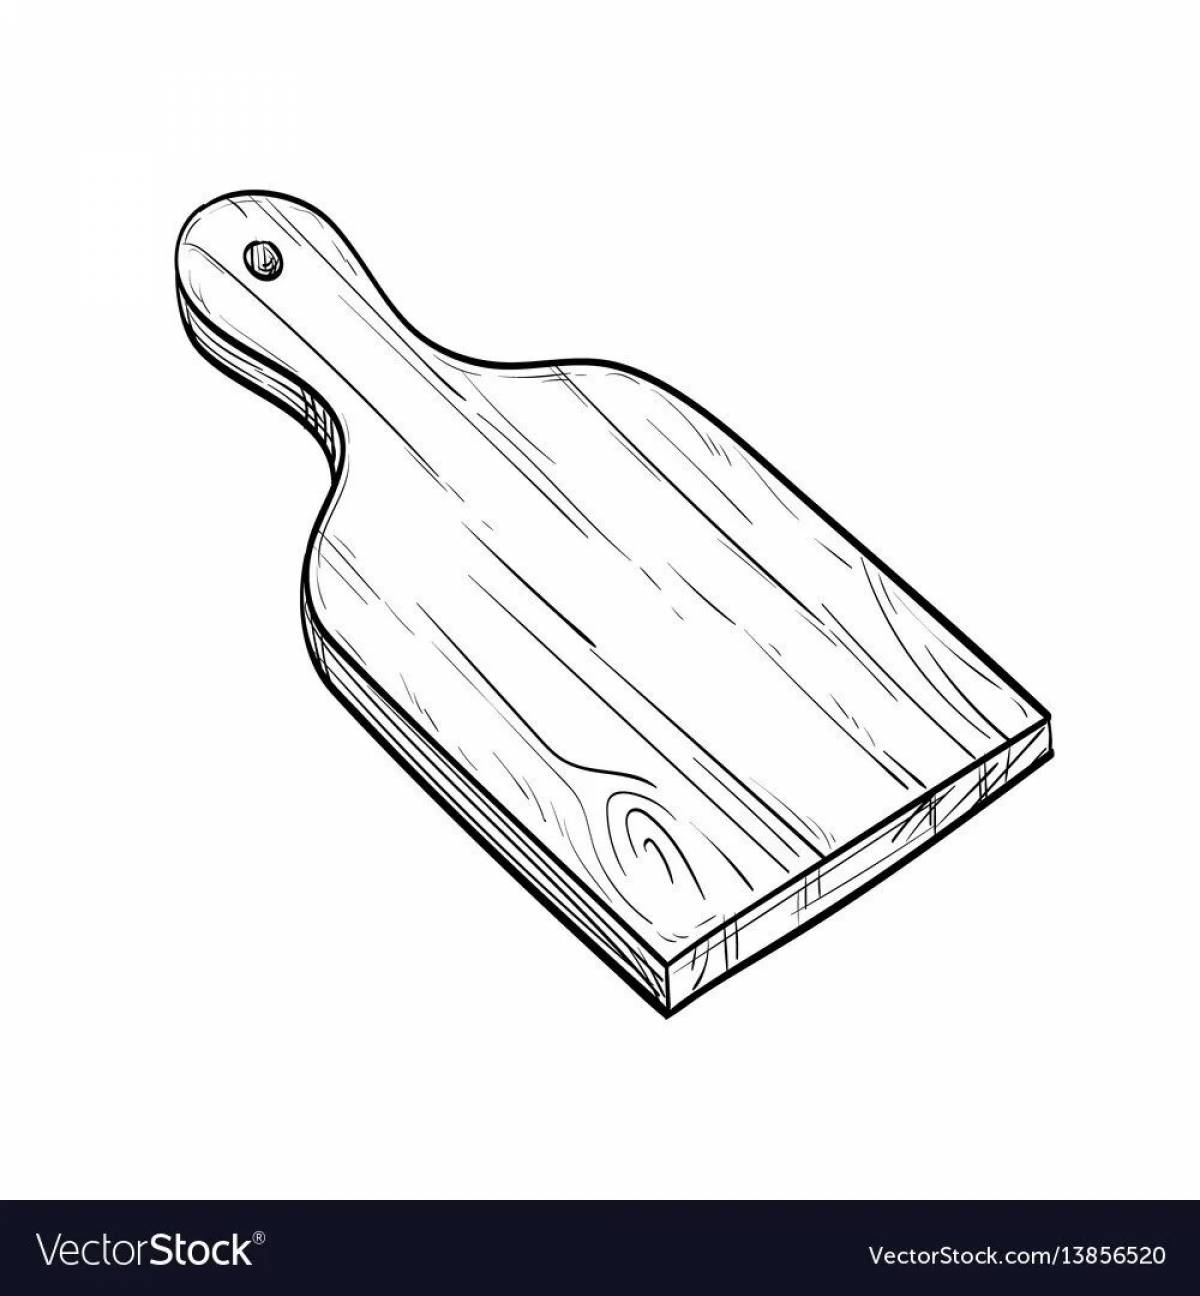 Children's cutting board #26